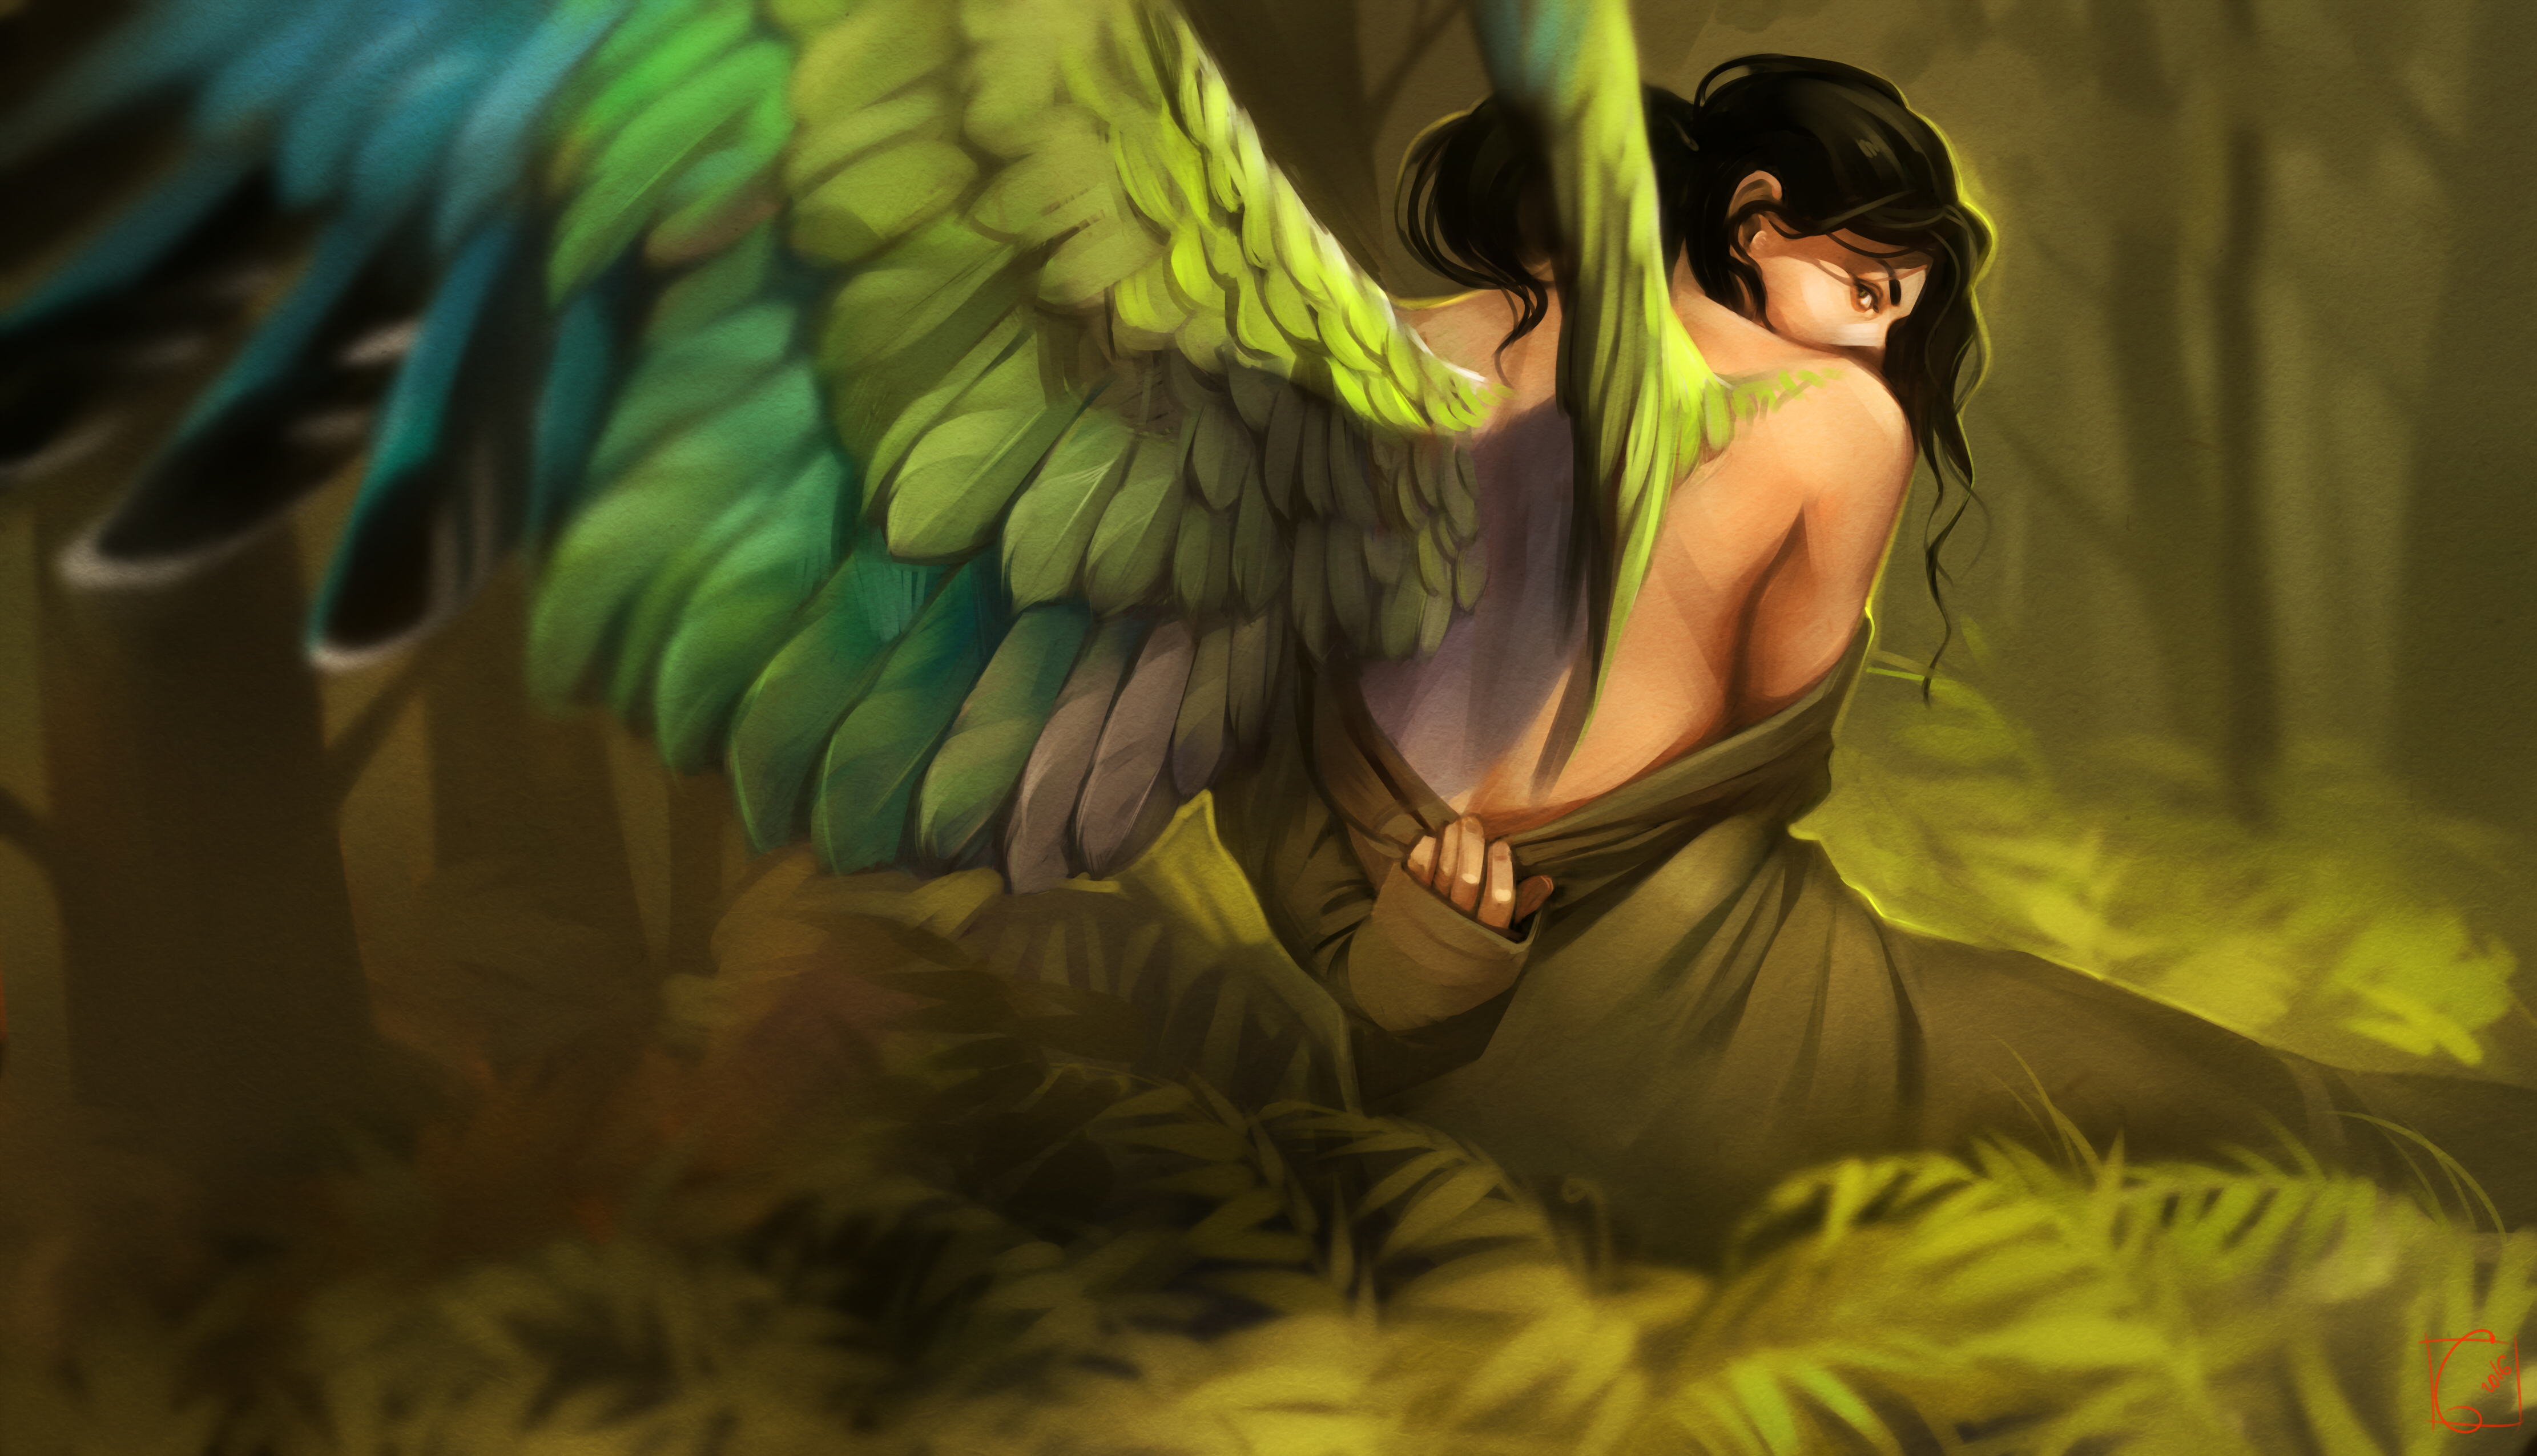 Fantasy Angel by Alexandra Khitrova